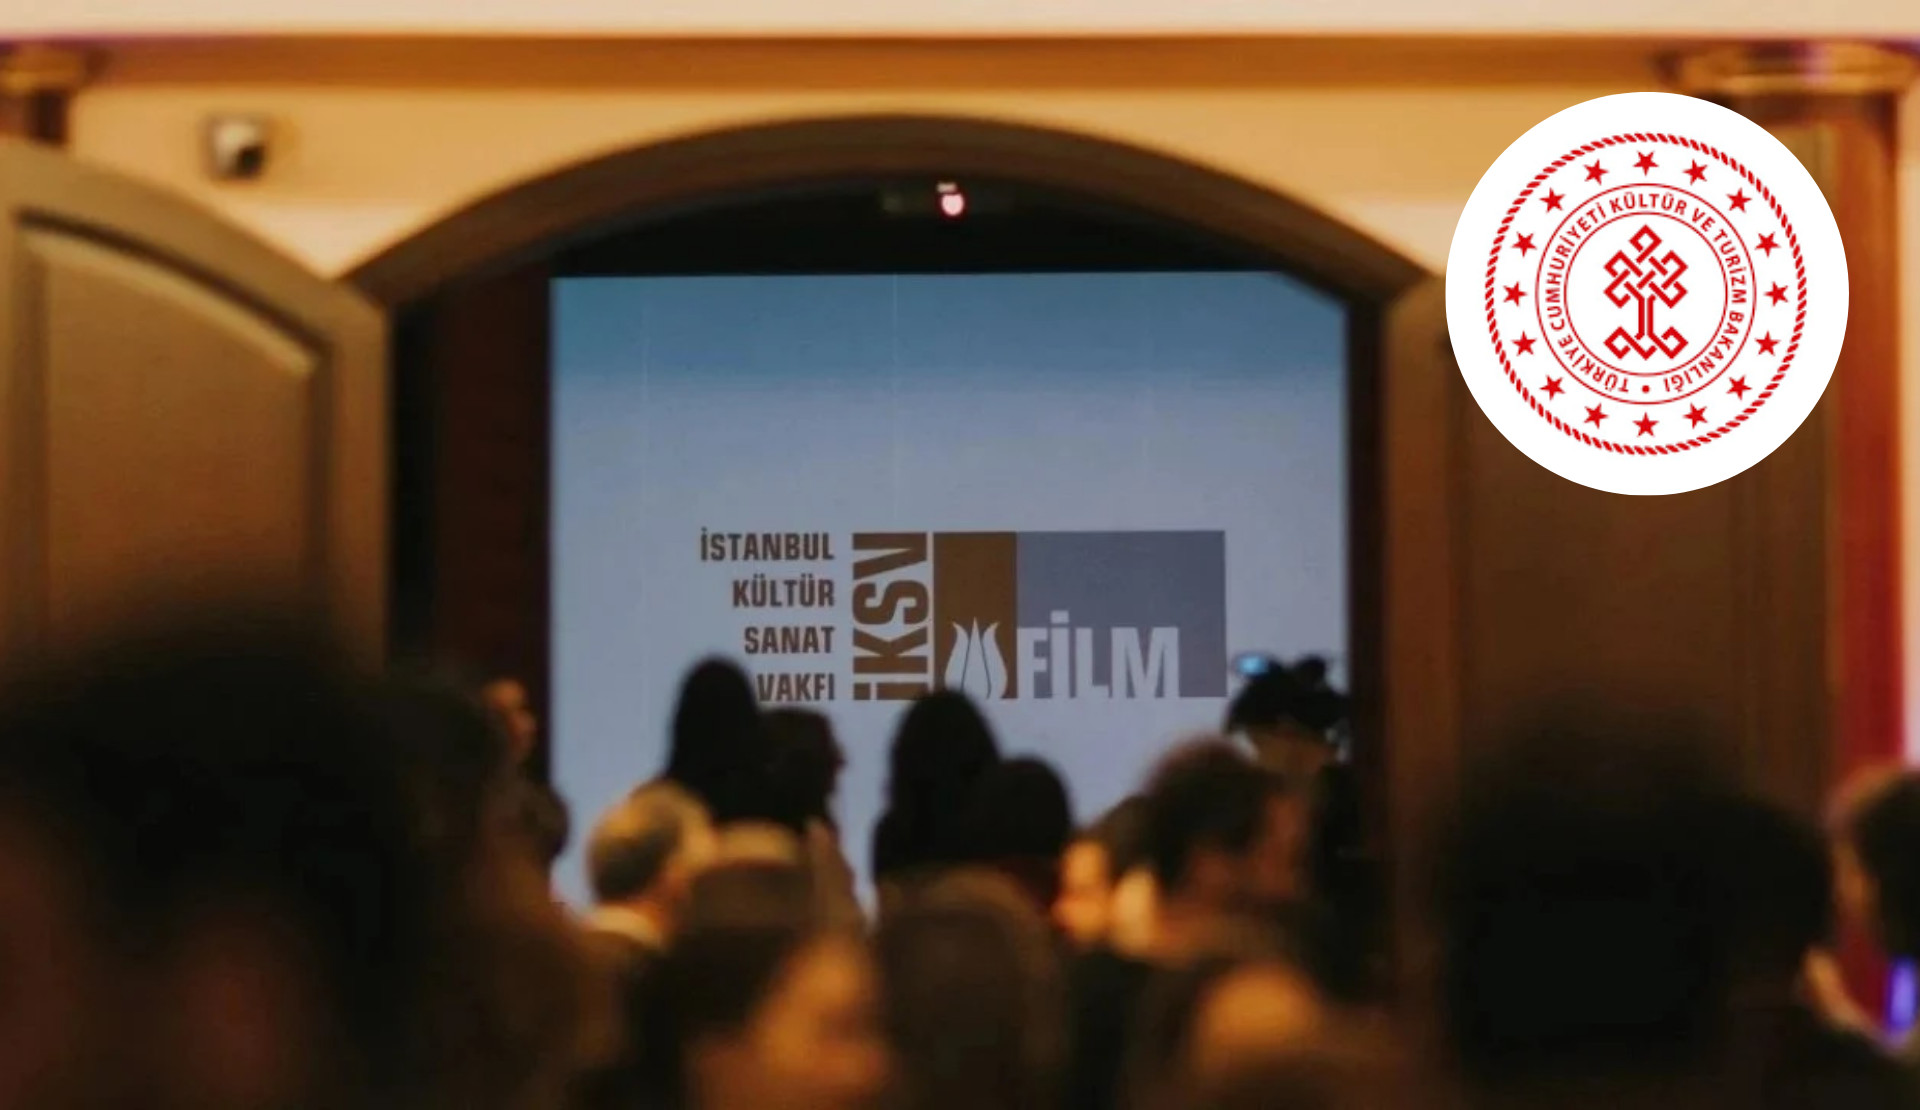 Kültür ve Turizm Bakanlığı, “LGBT propagandası” yapıyor denen İstanbul Film Festivali’nden logosunu çekti | Kaos GL - LGBTİ+ Haber Portalı Haber